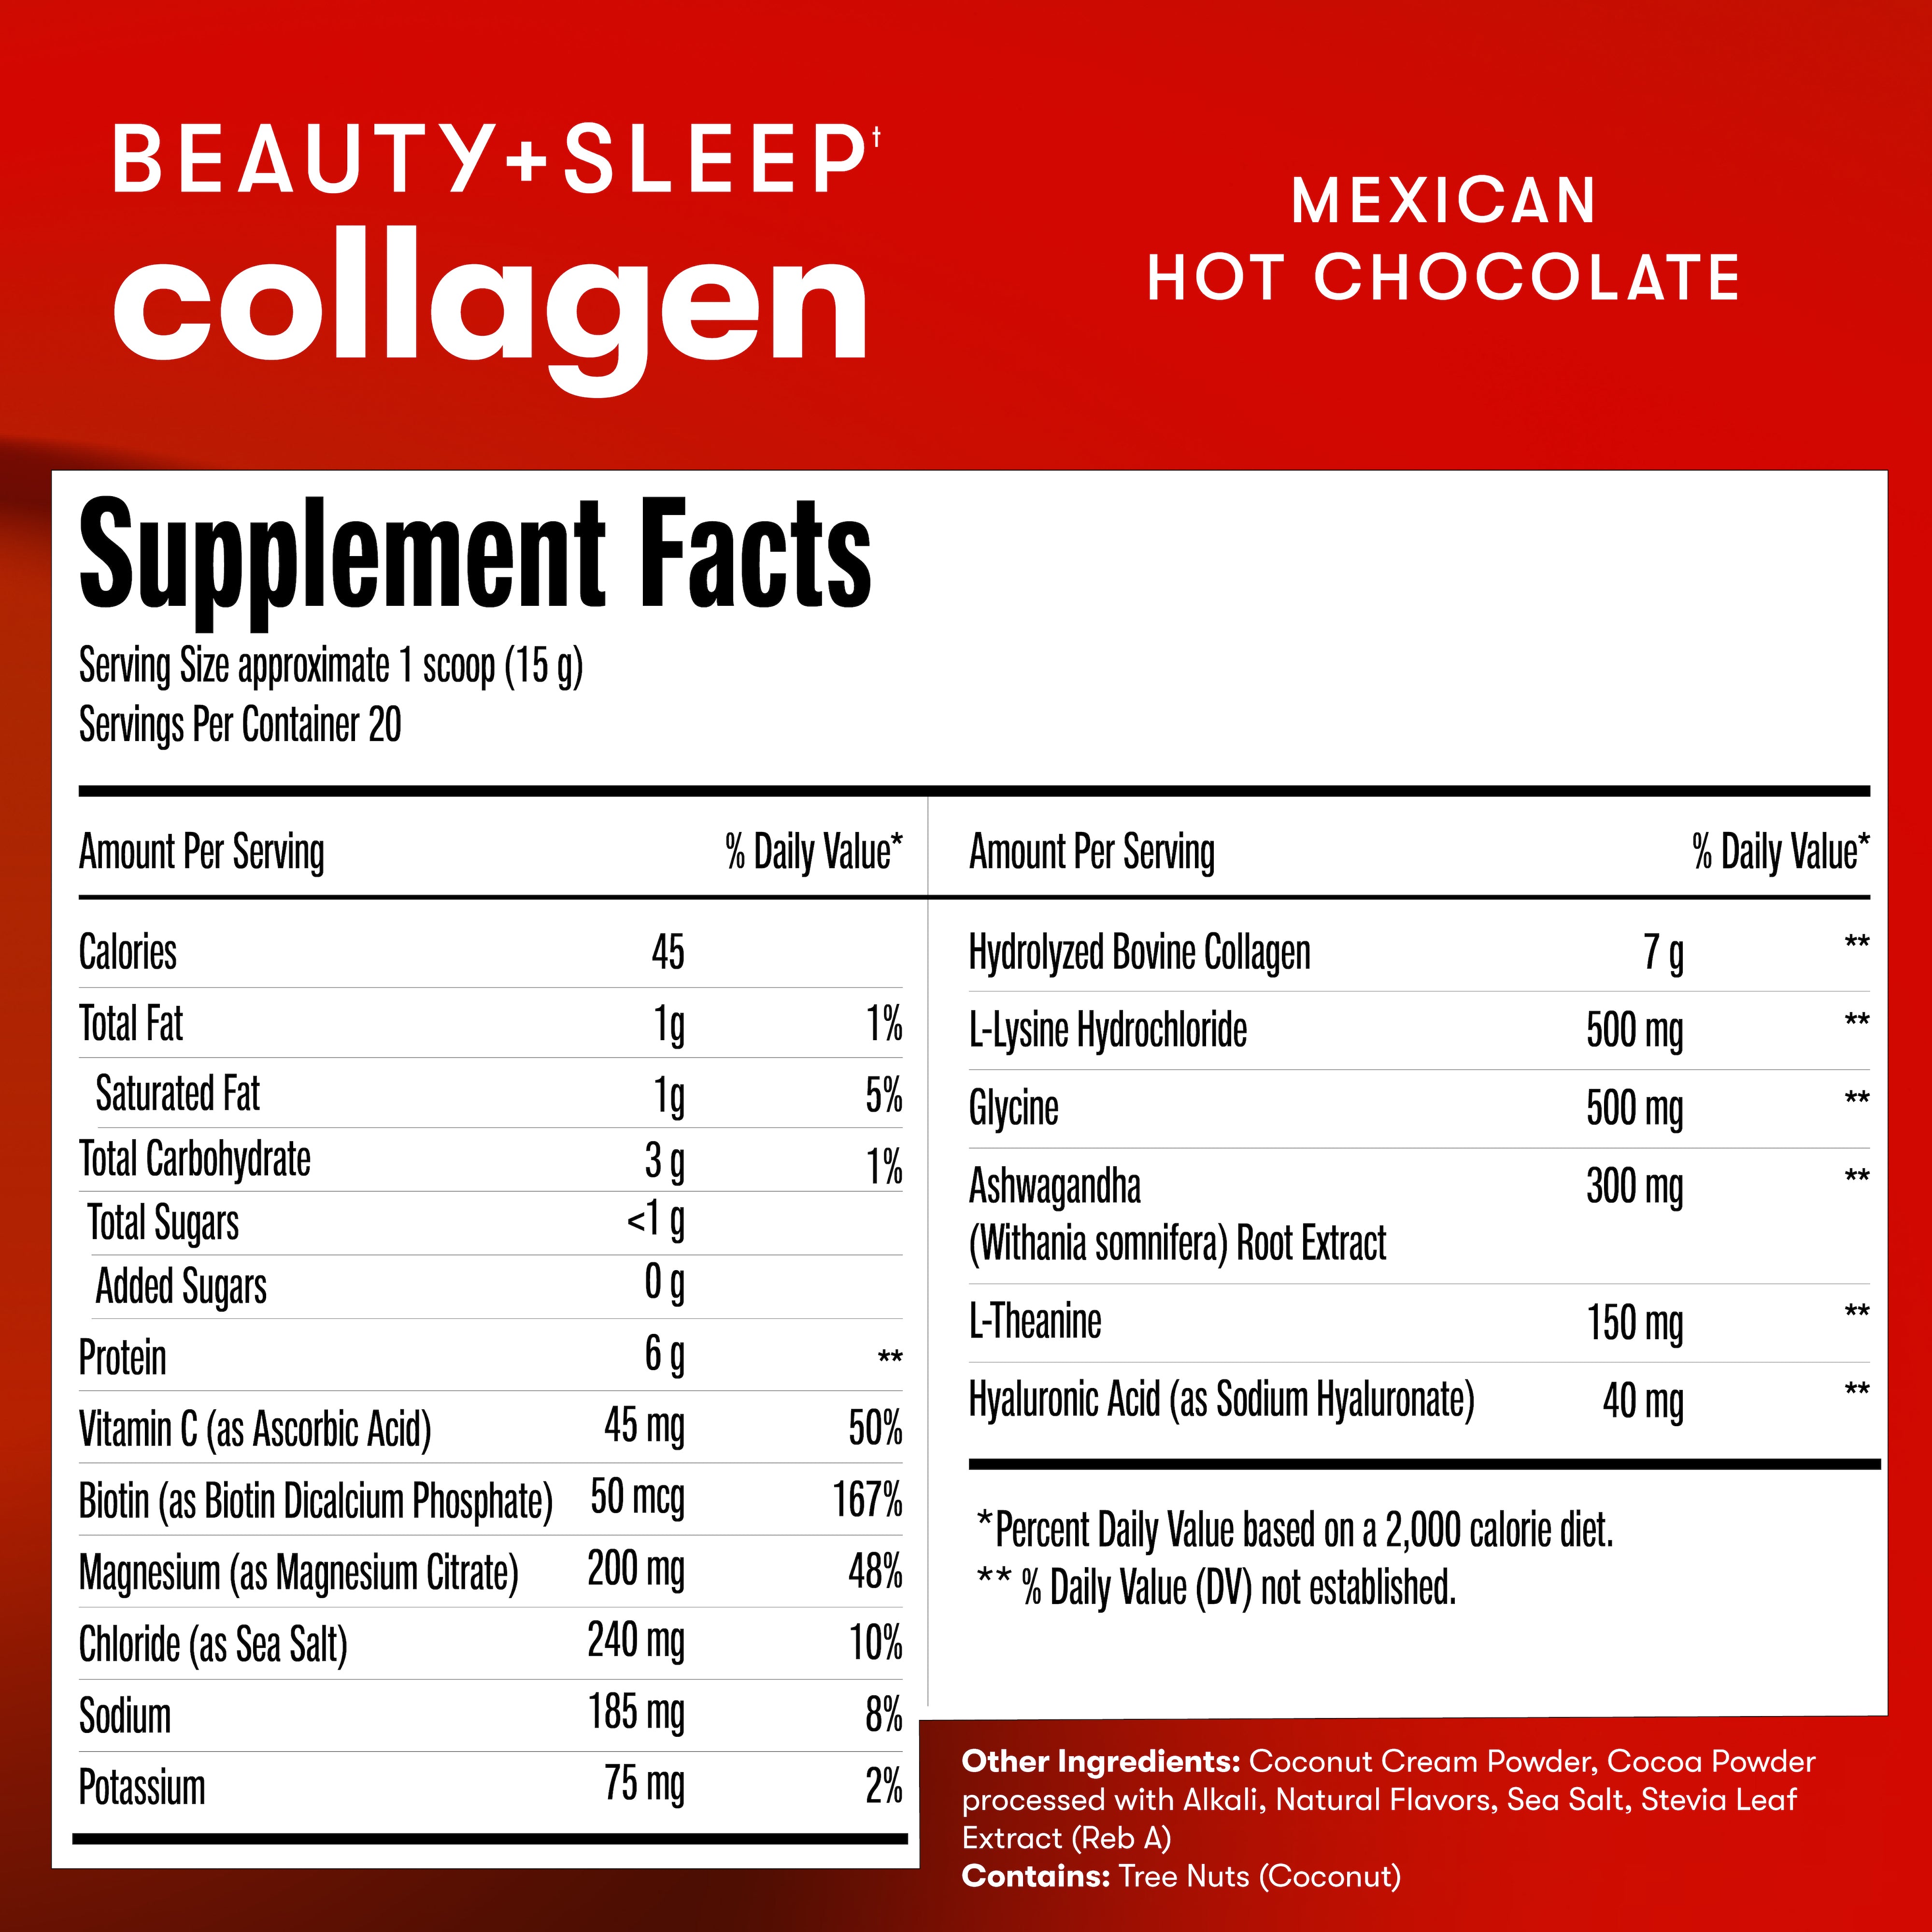 Beauty + Sleep Collagen